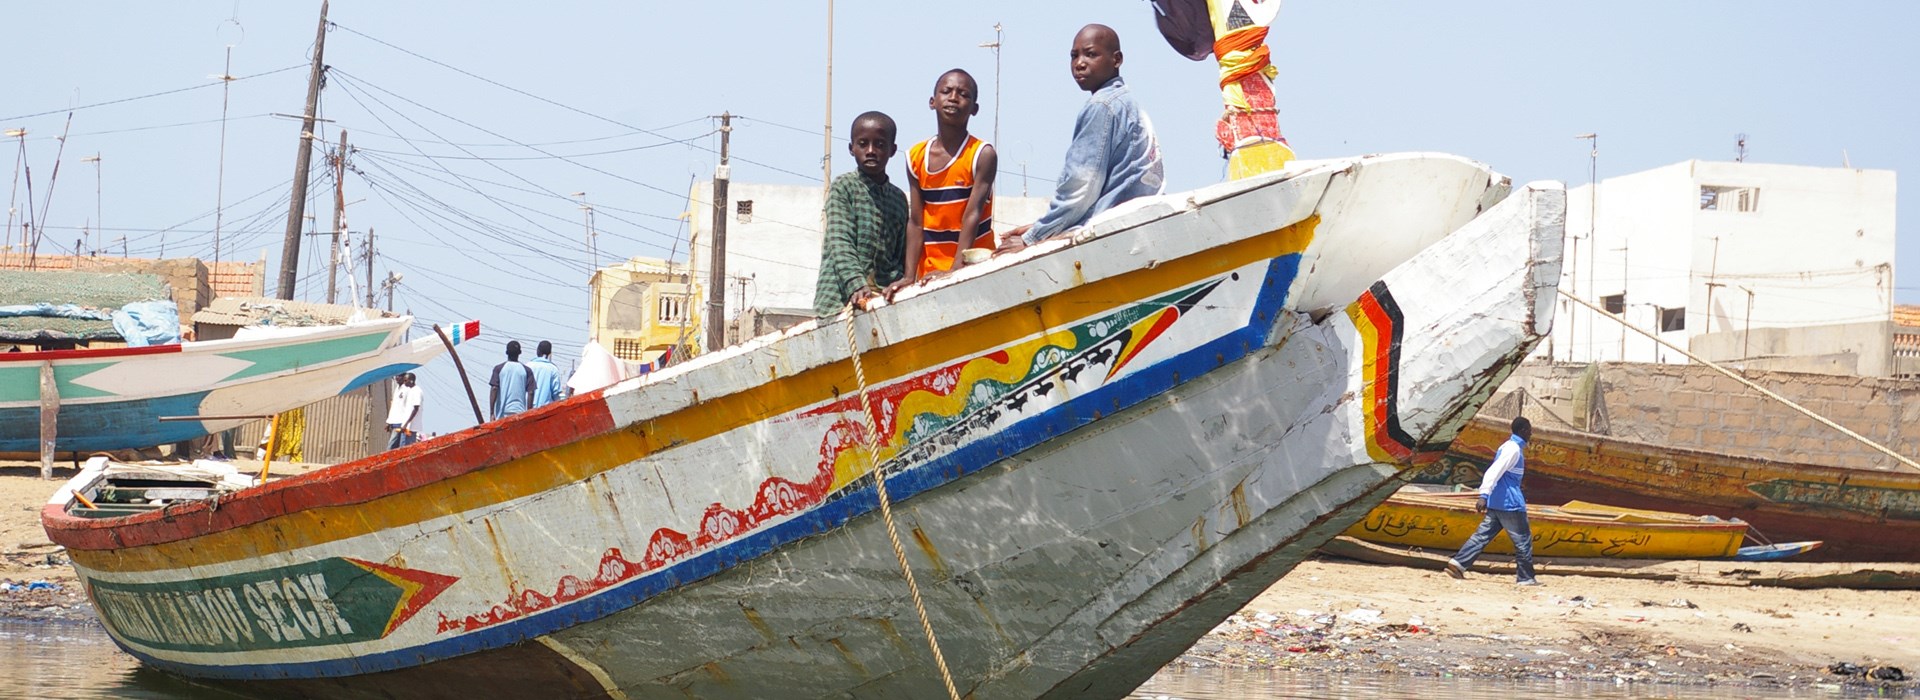 Visiter Saint-Louis - Sénégal